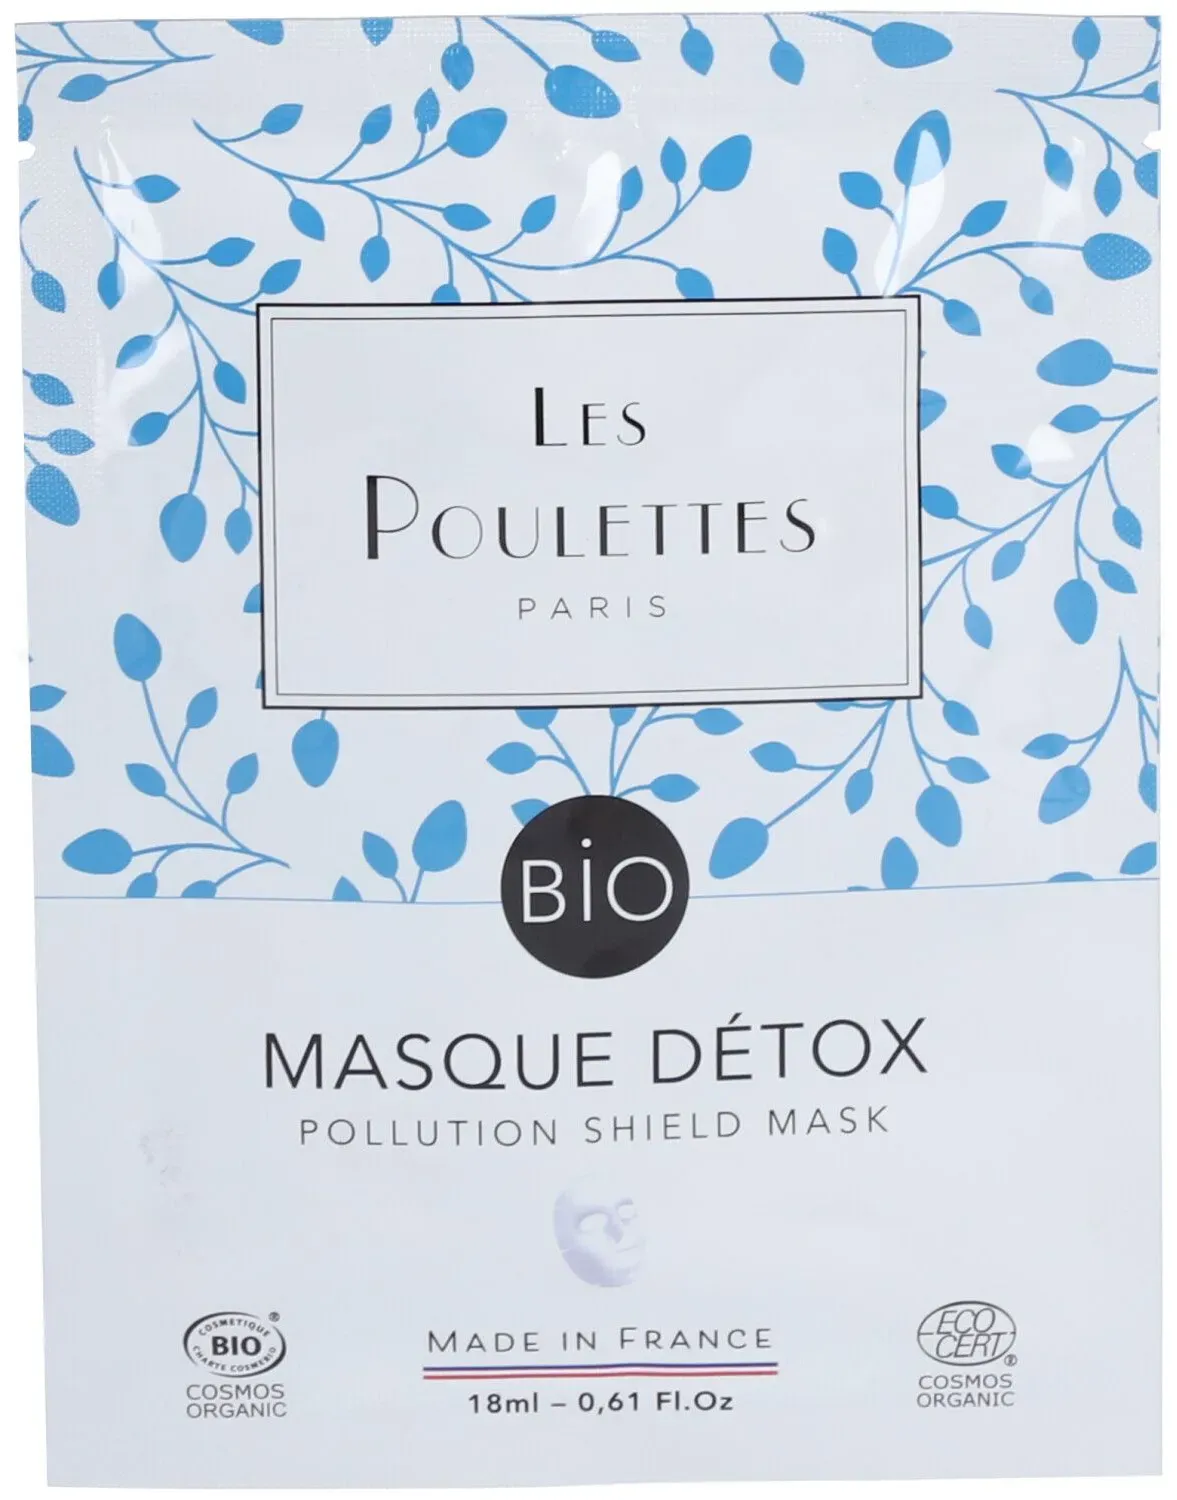 Les Poulettes Paris Masque Détox Bio 18 ml masque(s) pour le visage